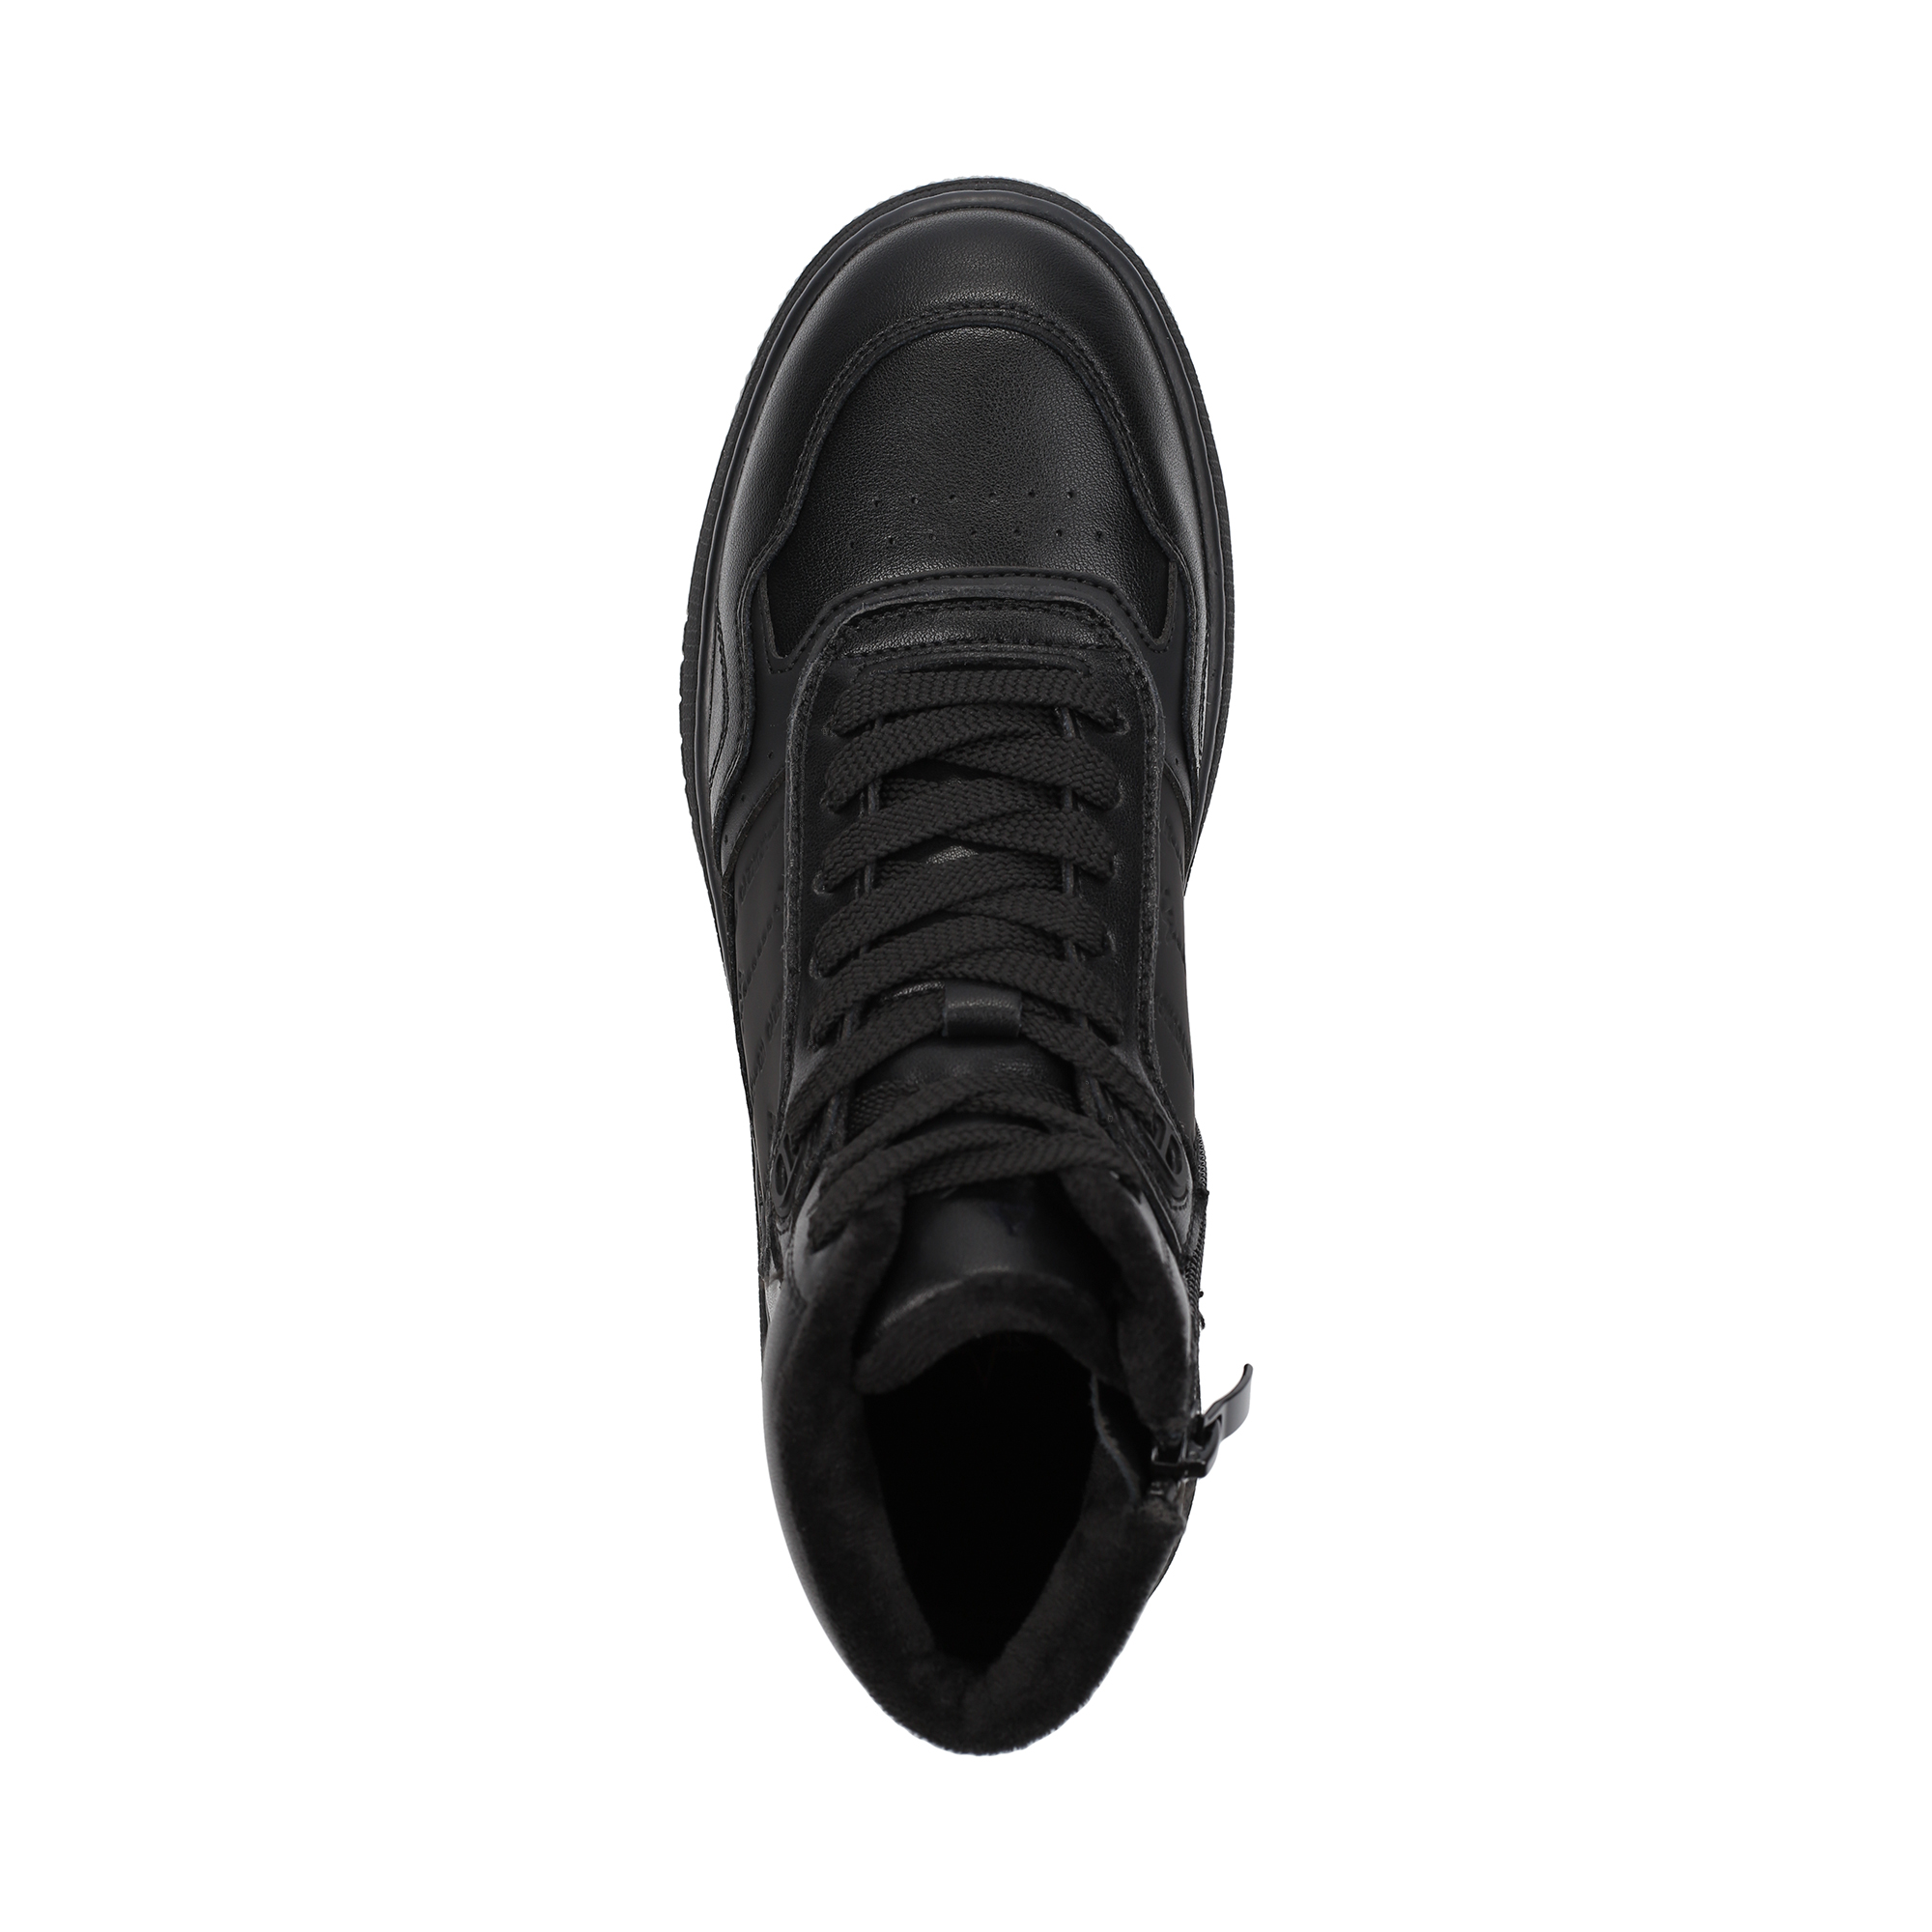 Ботинки MUNZ YOUNG 098-3451A-2602, цвет черный, размер 38 - фото 5